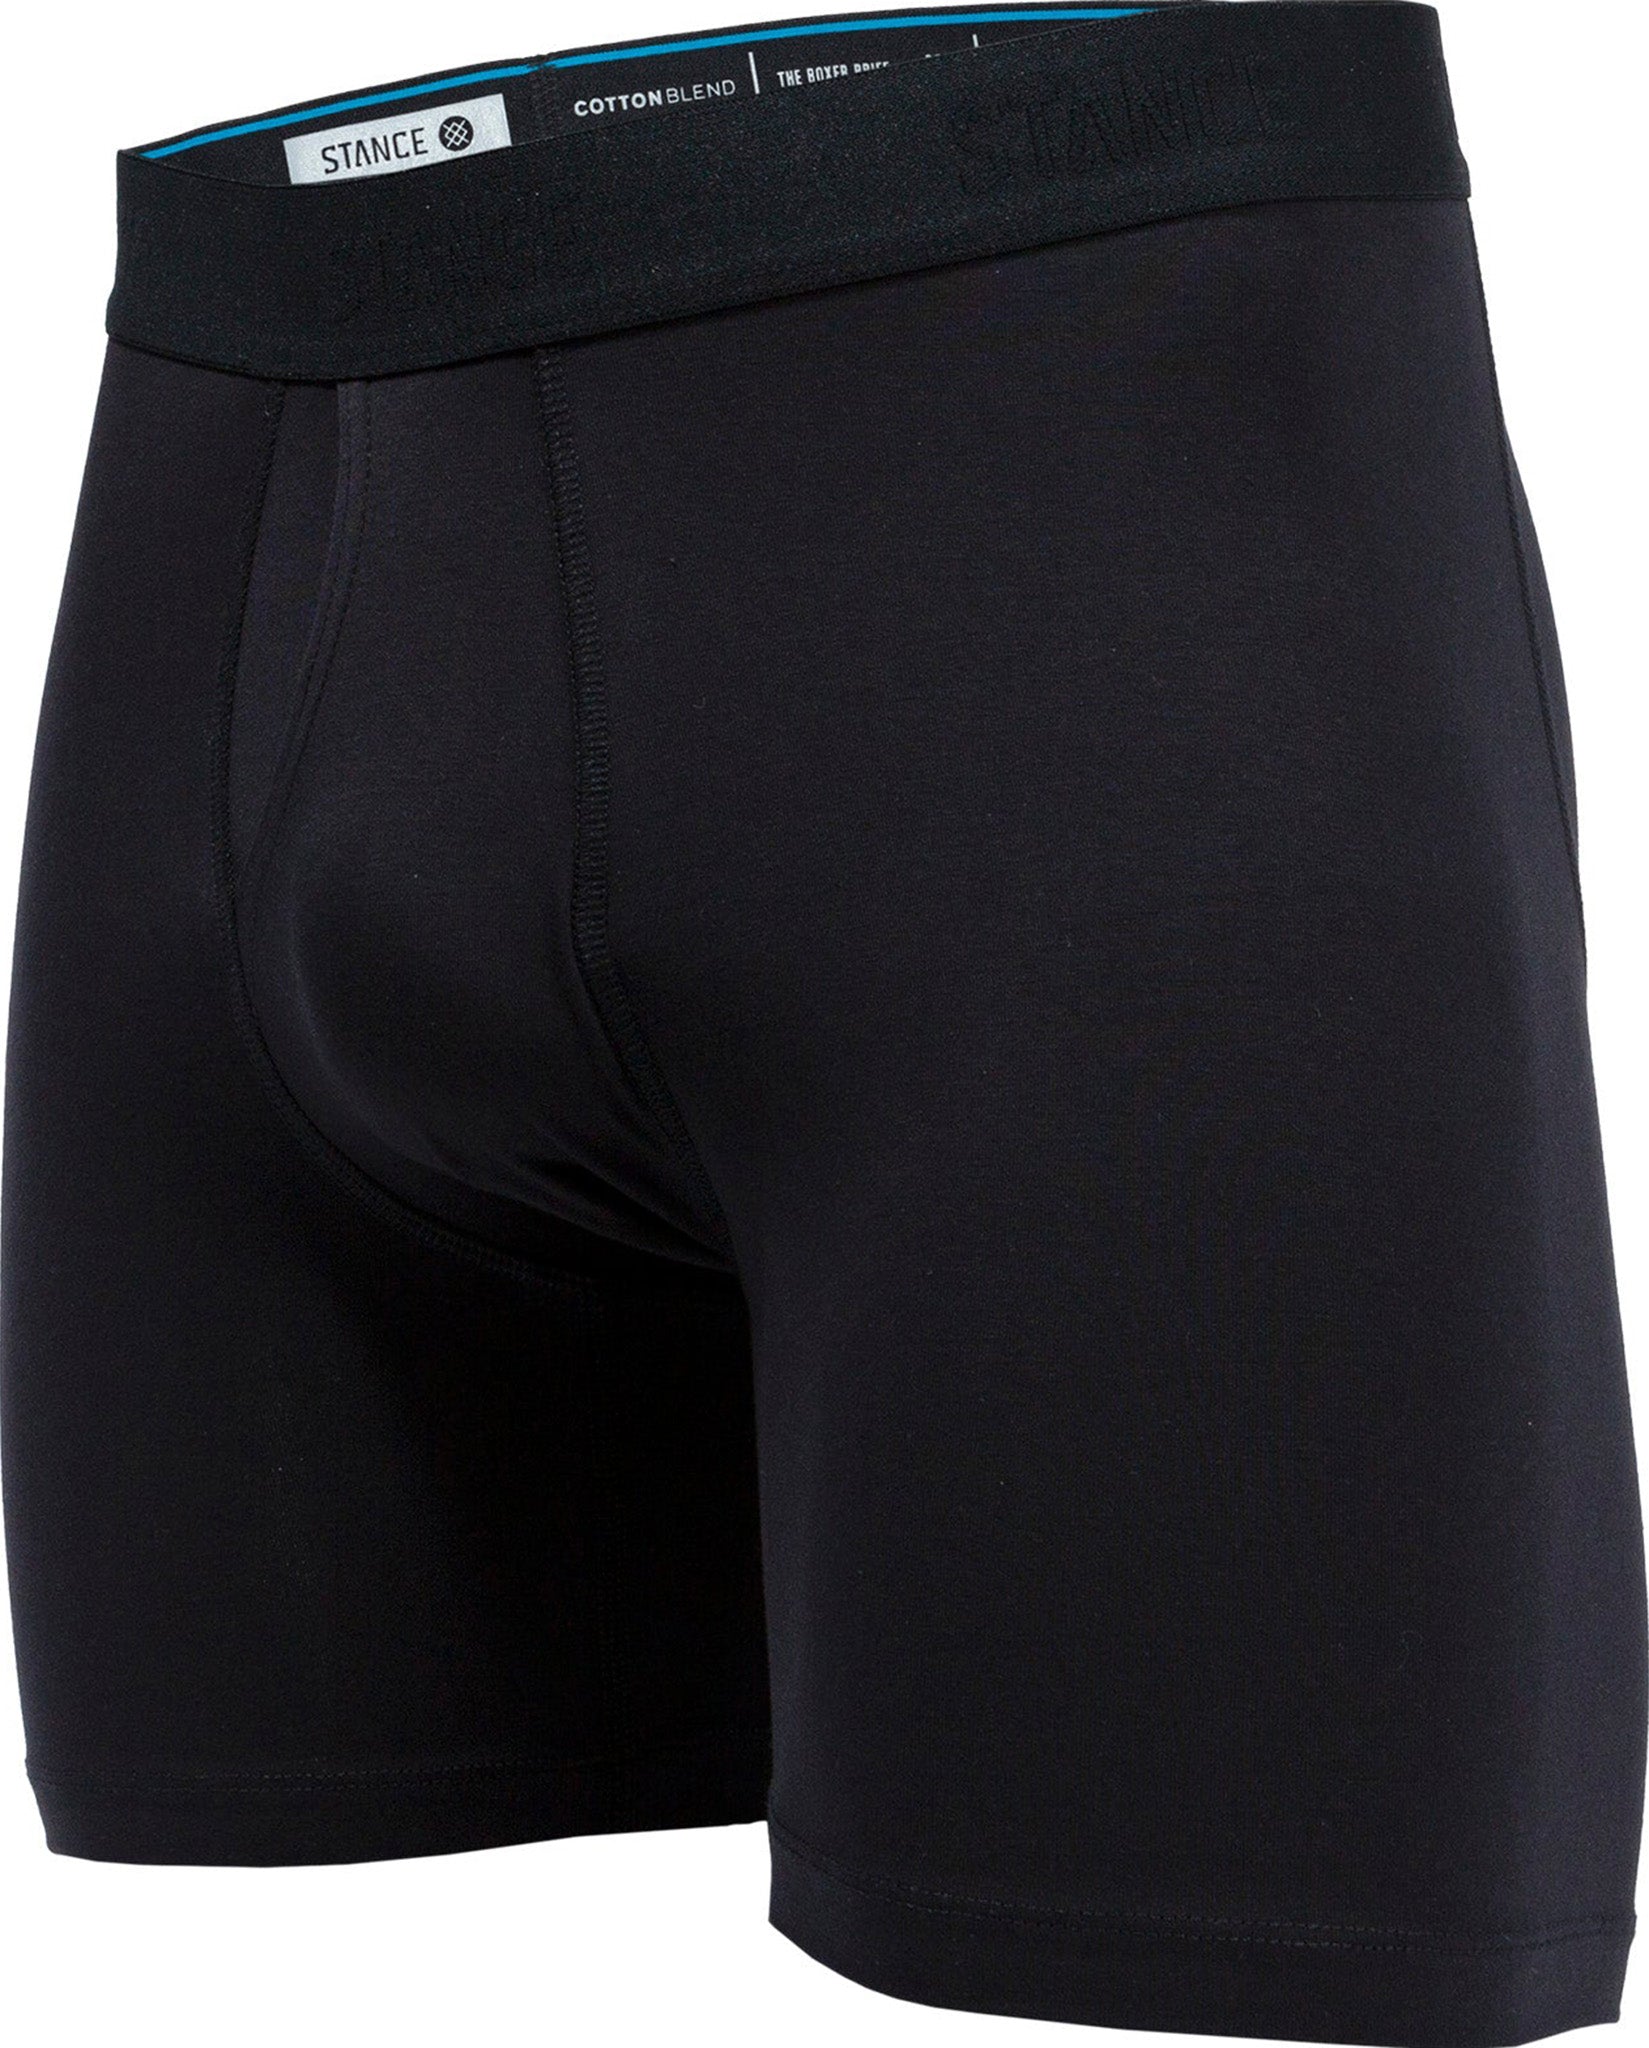 Stance Butter Blend Boxer Underwear Black, XL